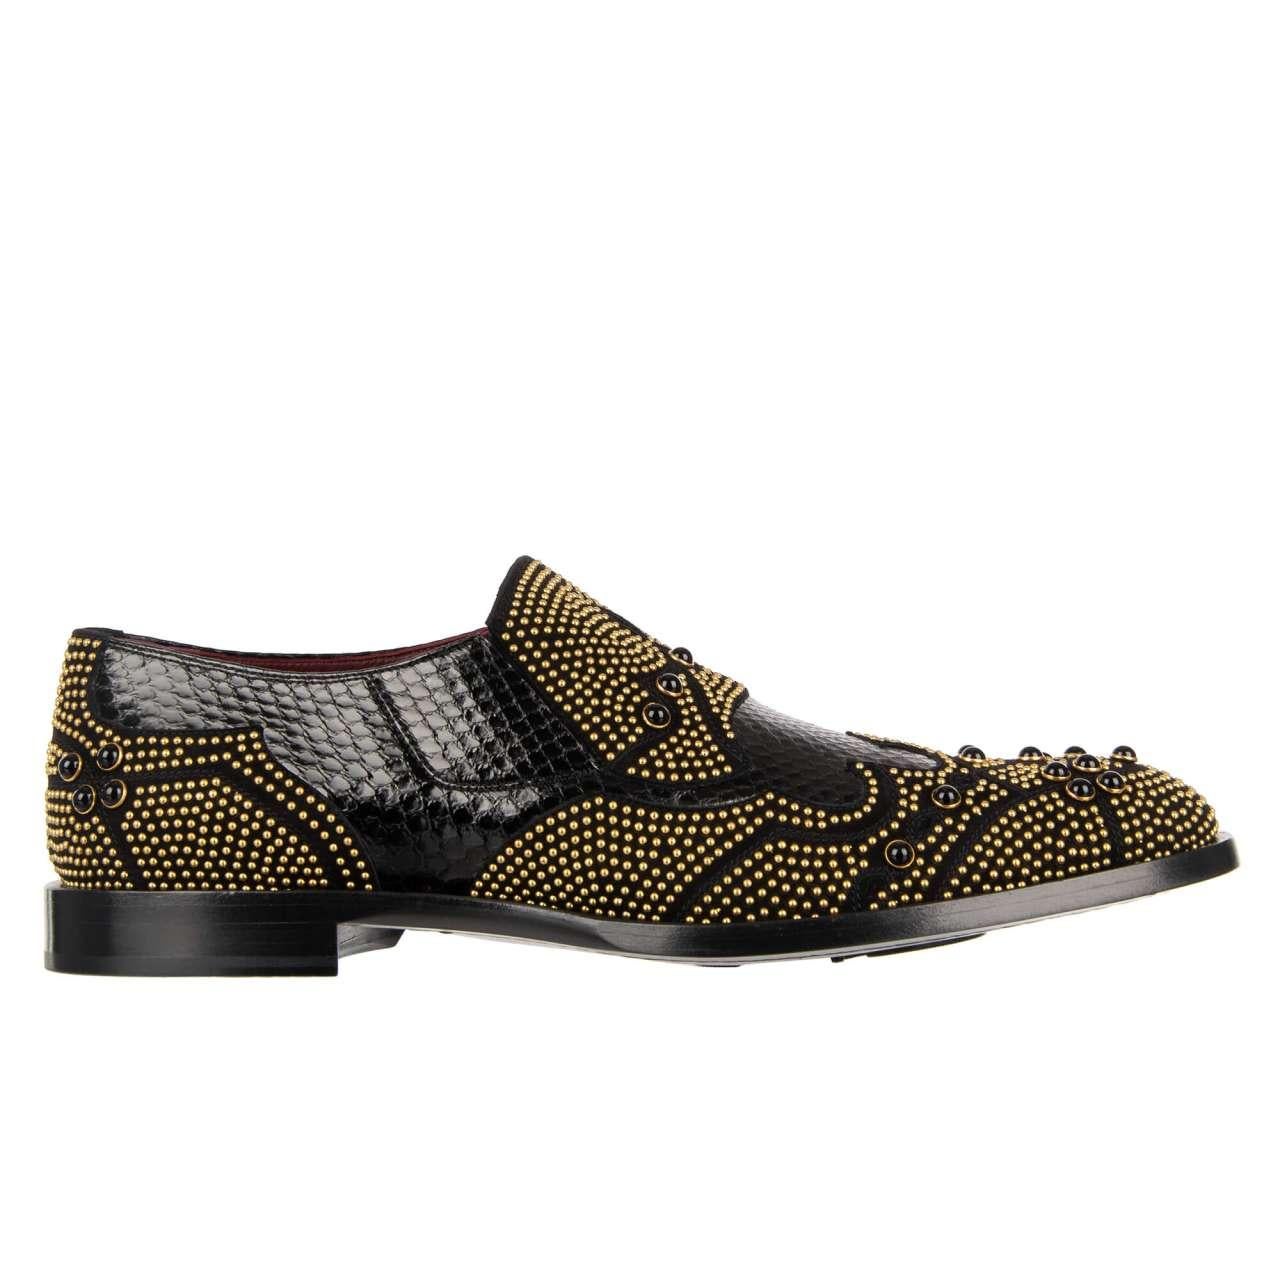 Dolce & Gabbana Snake Studs Pearl Shoes Loafer NAPLES Black Gold 44 UK 10 US 11 For Sale 3